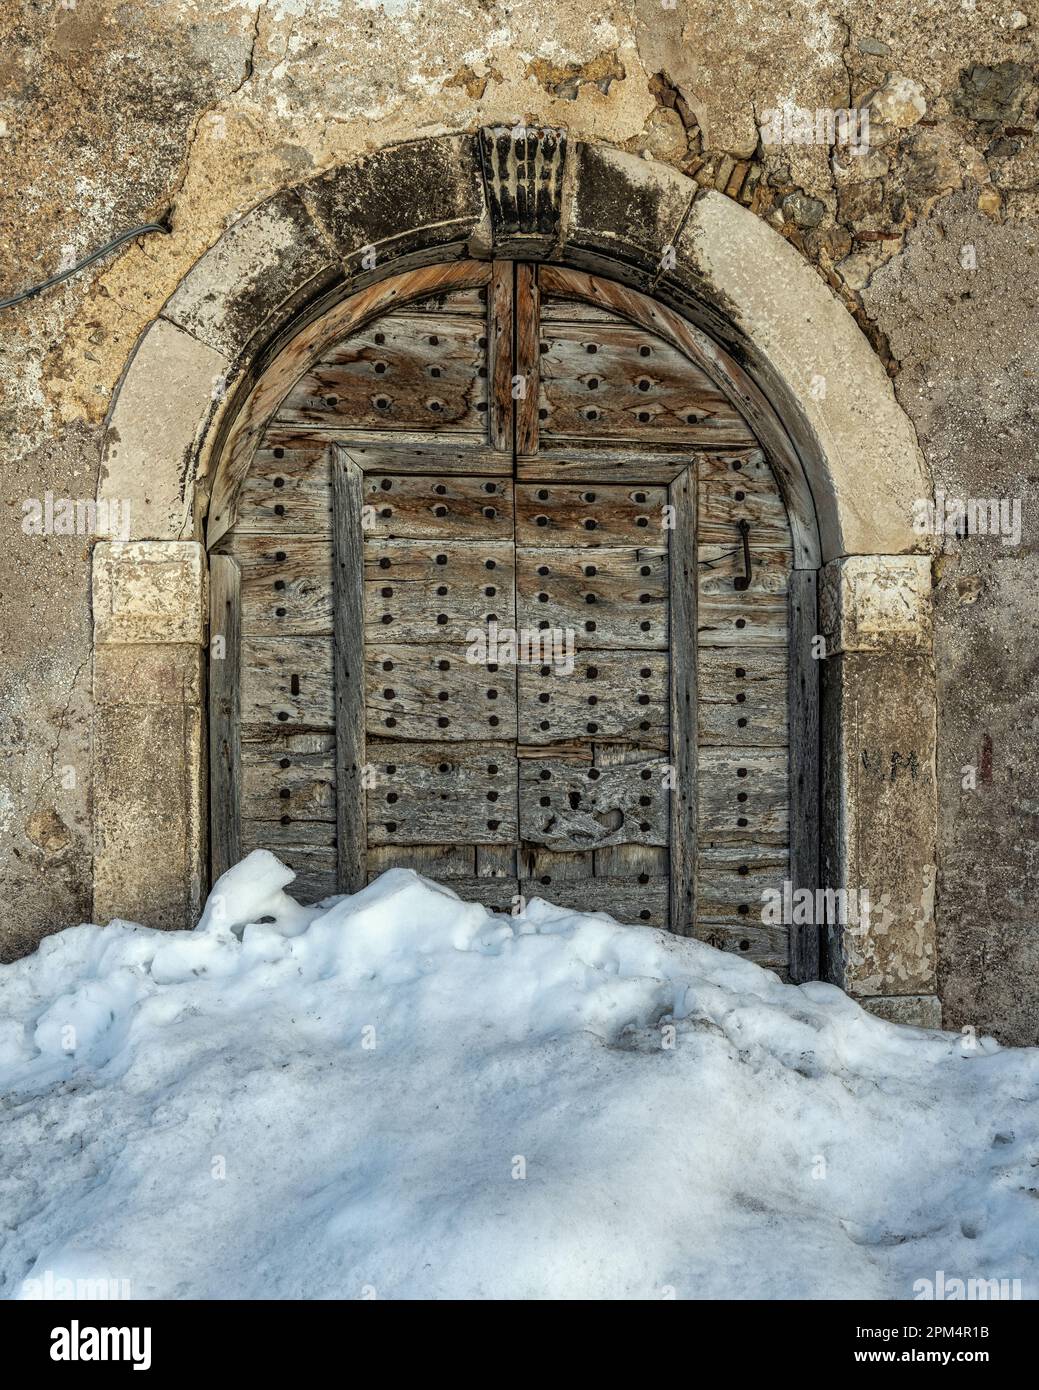 Antico portale con porte in legno bloccato da una nevicata nel piccolo borgo montano di campo di Giove. Parco Nazionale della Maiella, campo di Giove, Abruzzo Foto Stock